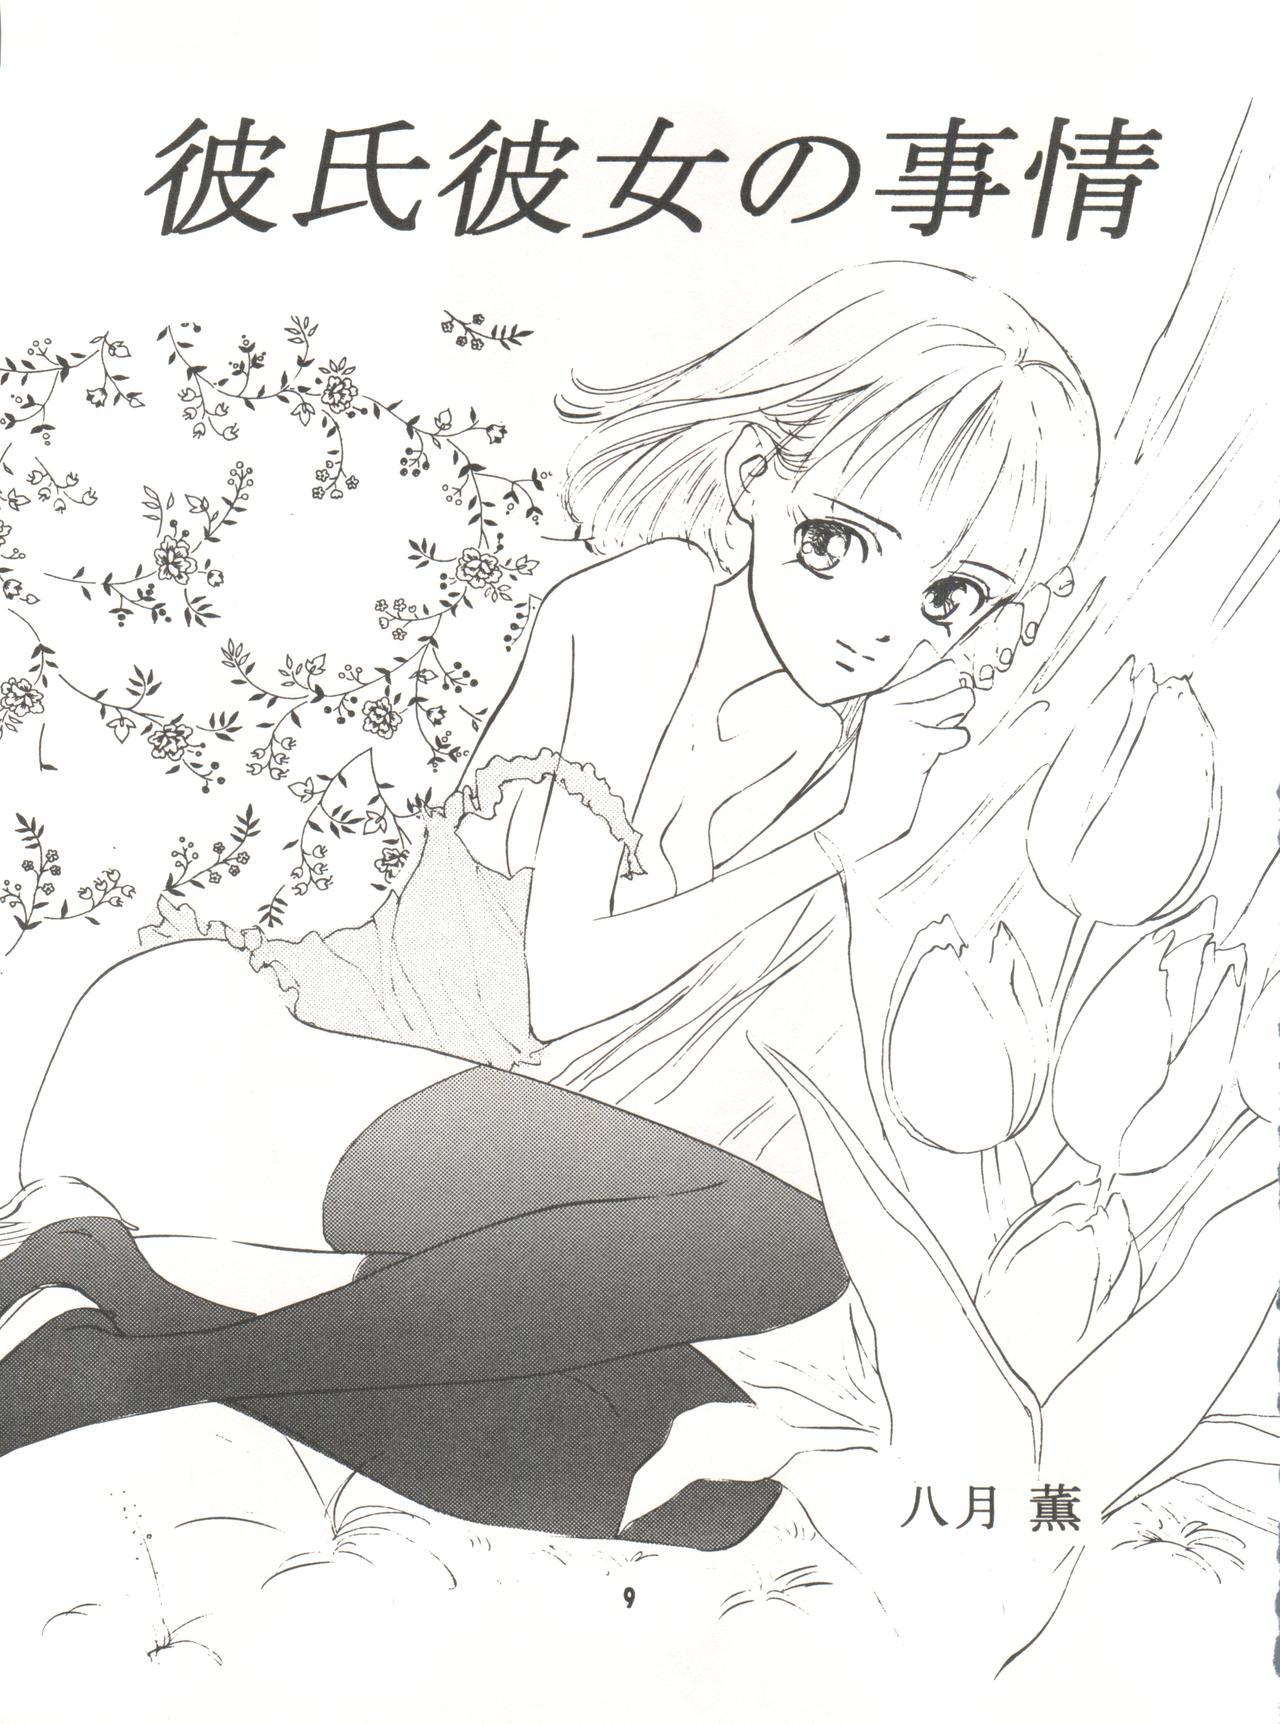 Sister Wanpaku Anime Vol. 9 Kare Kano Tokushuu Kanojo wa... - Kare kano Hardcoresex - Page 11